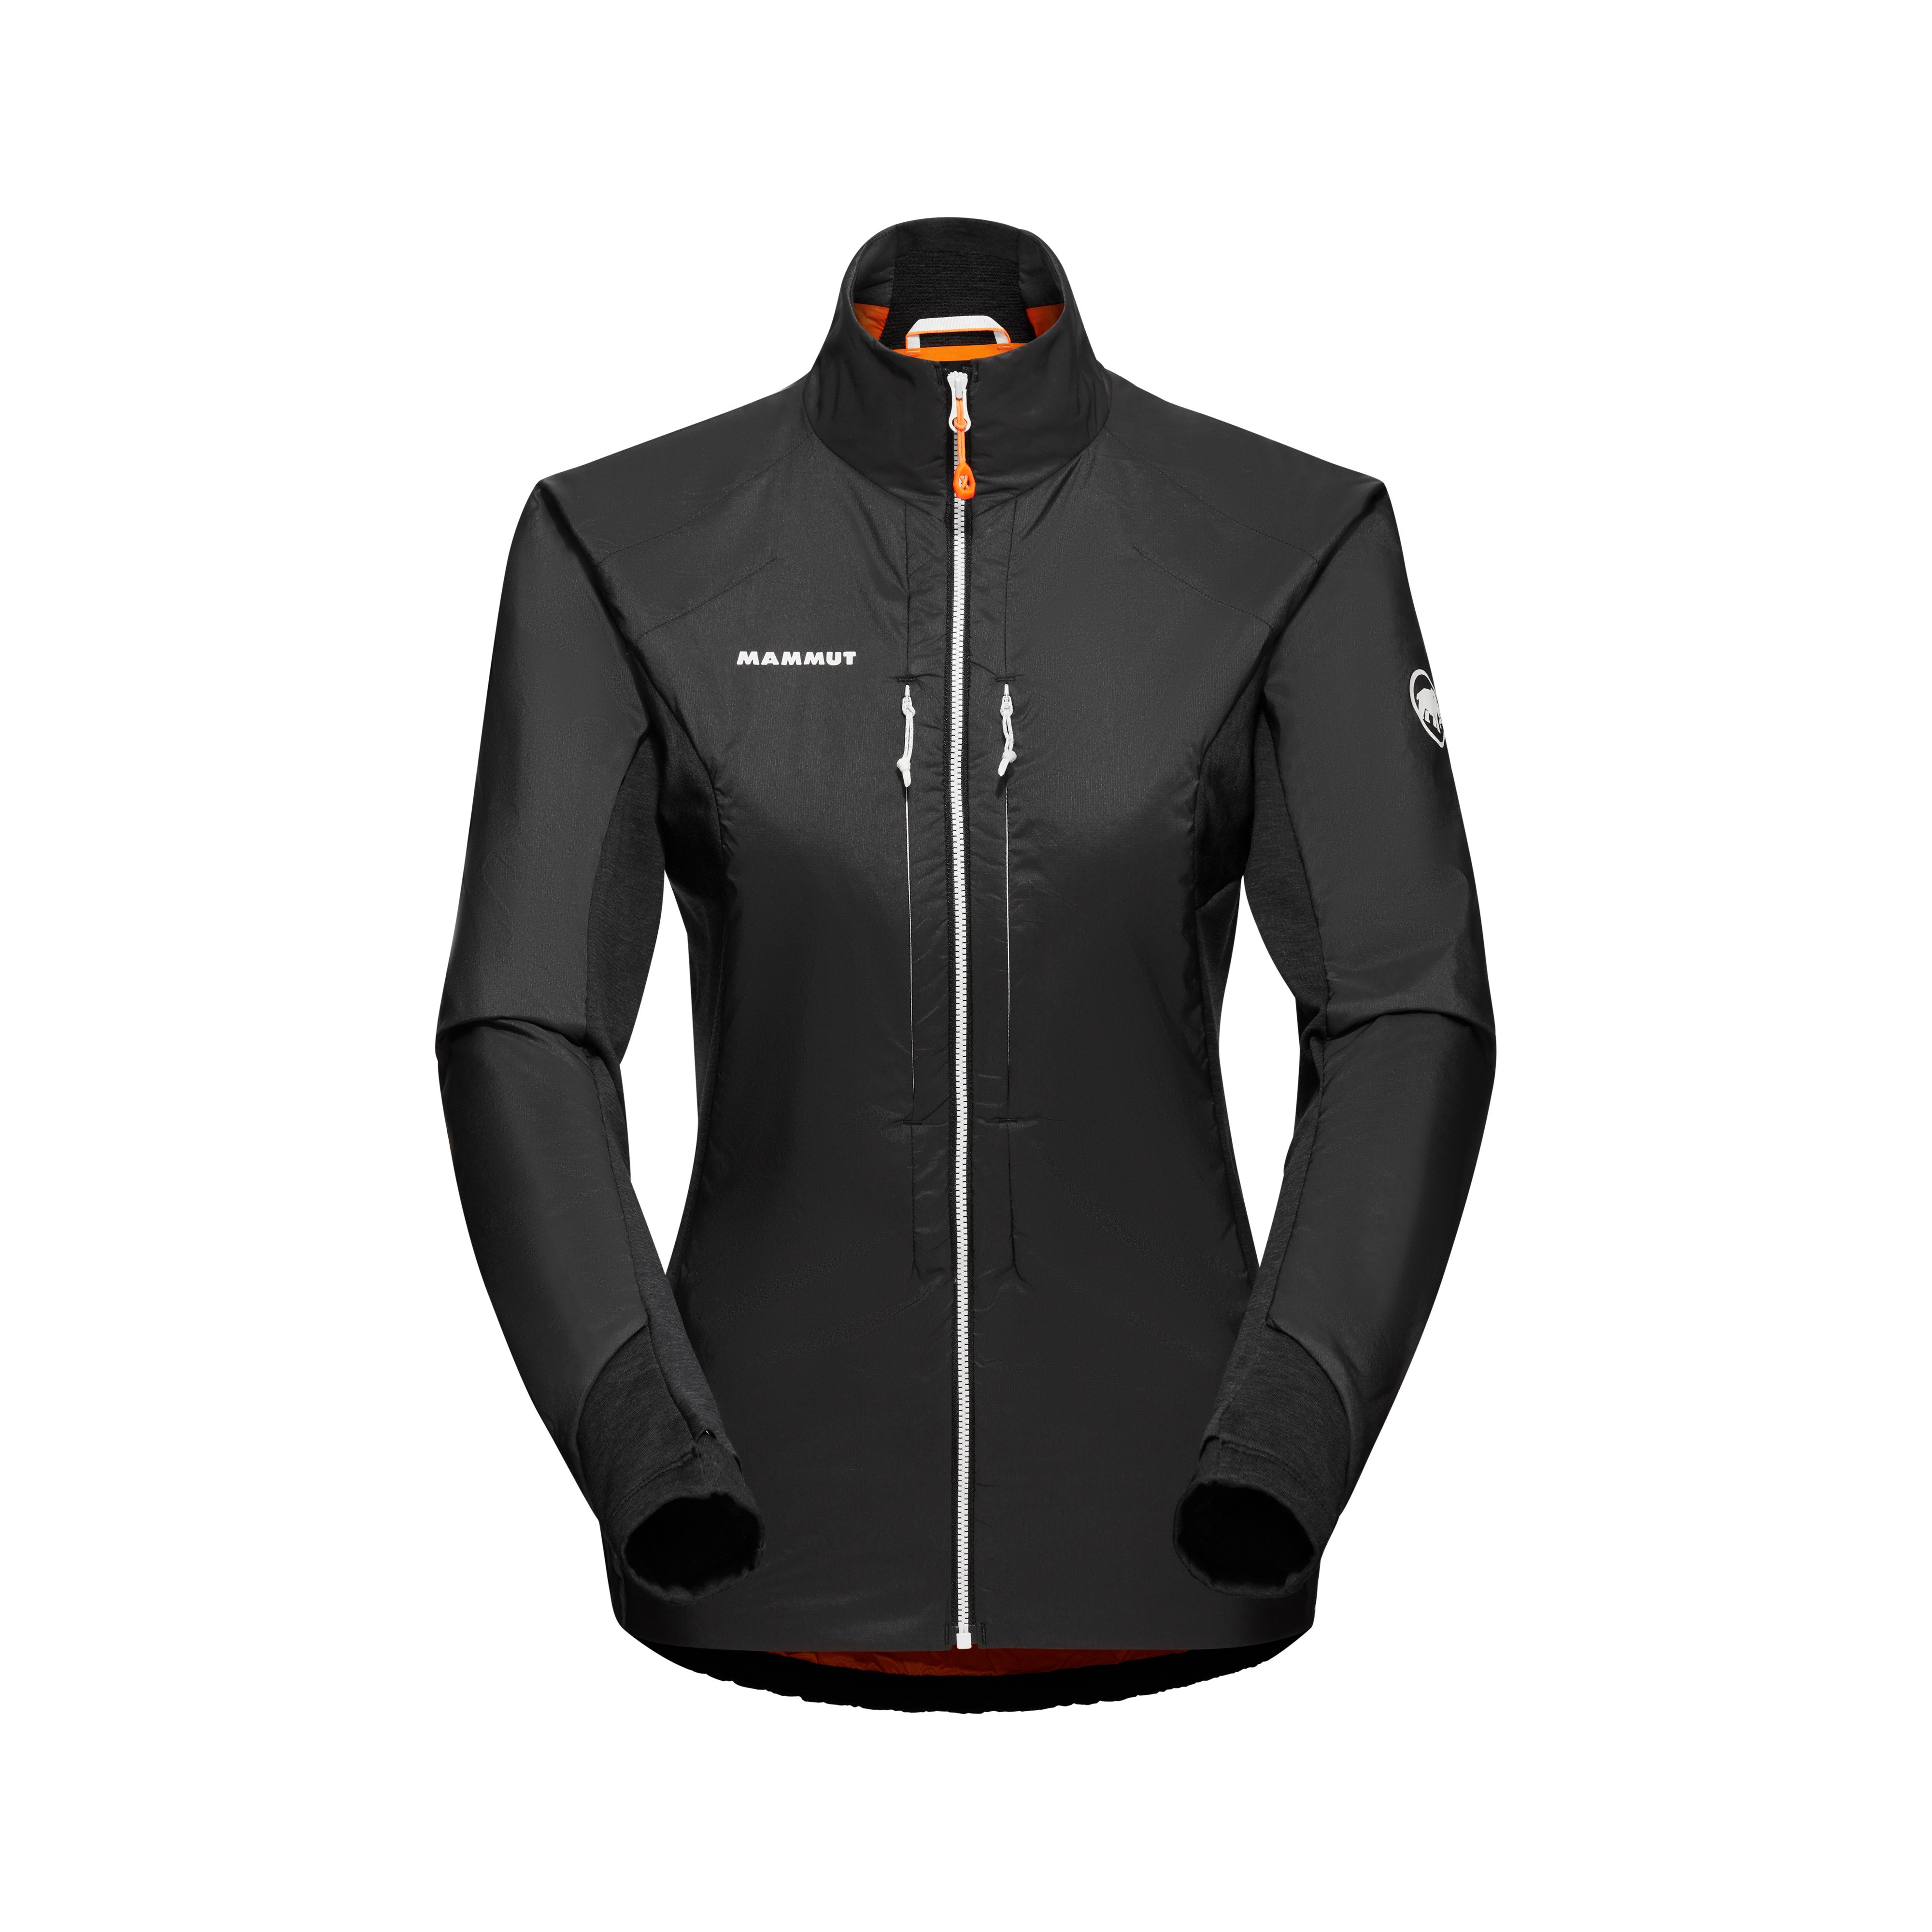 Eigerjoch IN Hybrid Jacket Women - black, L product image